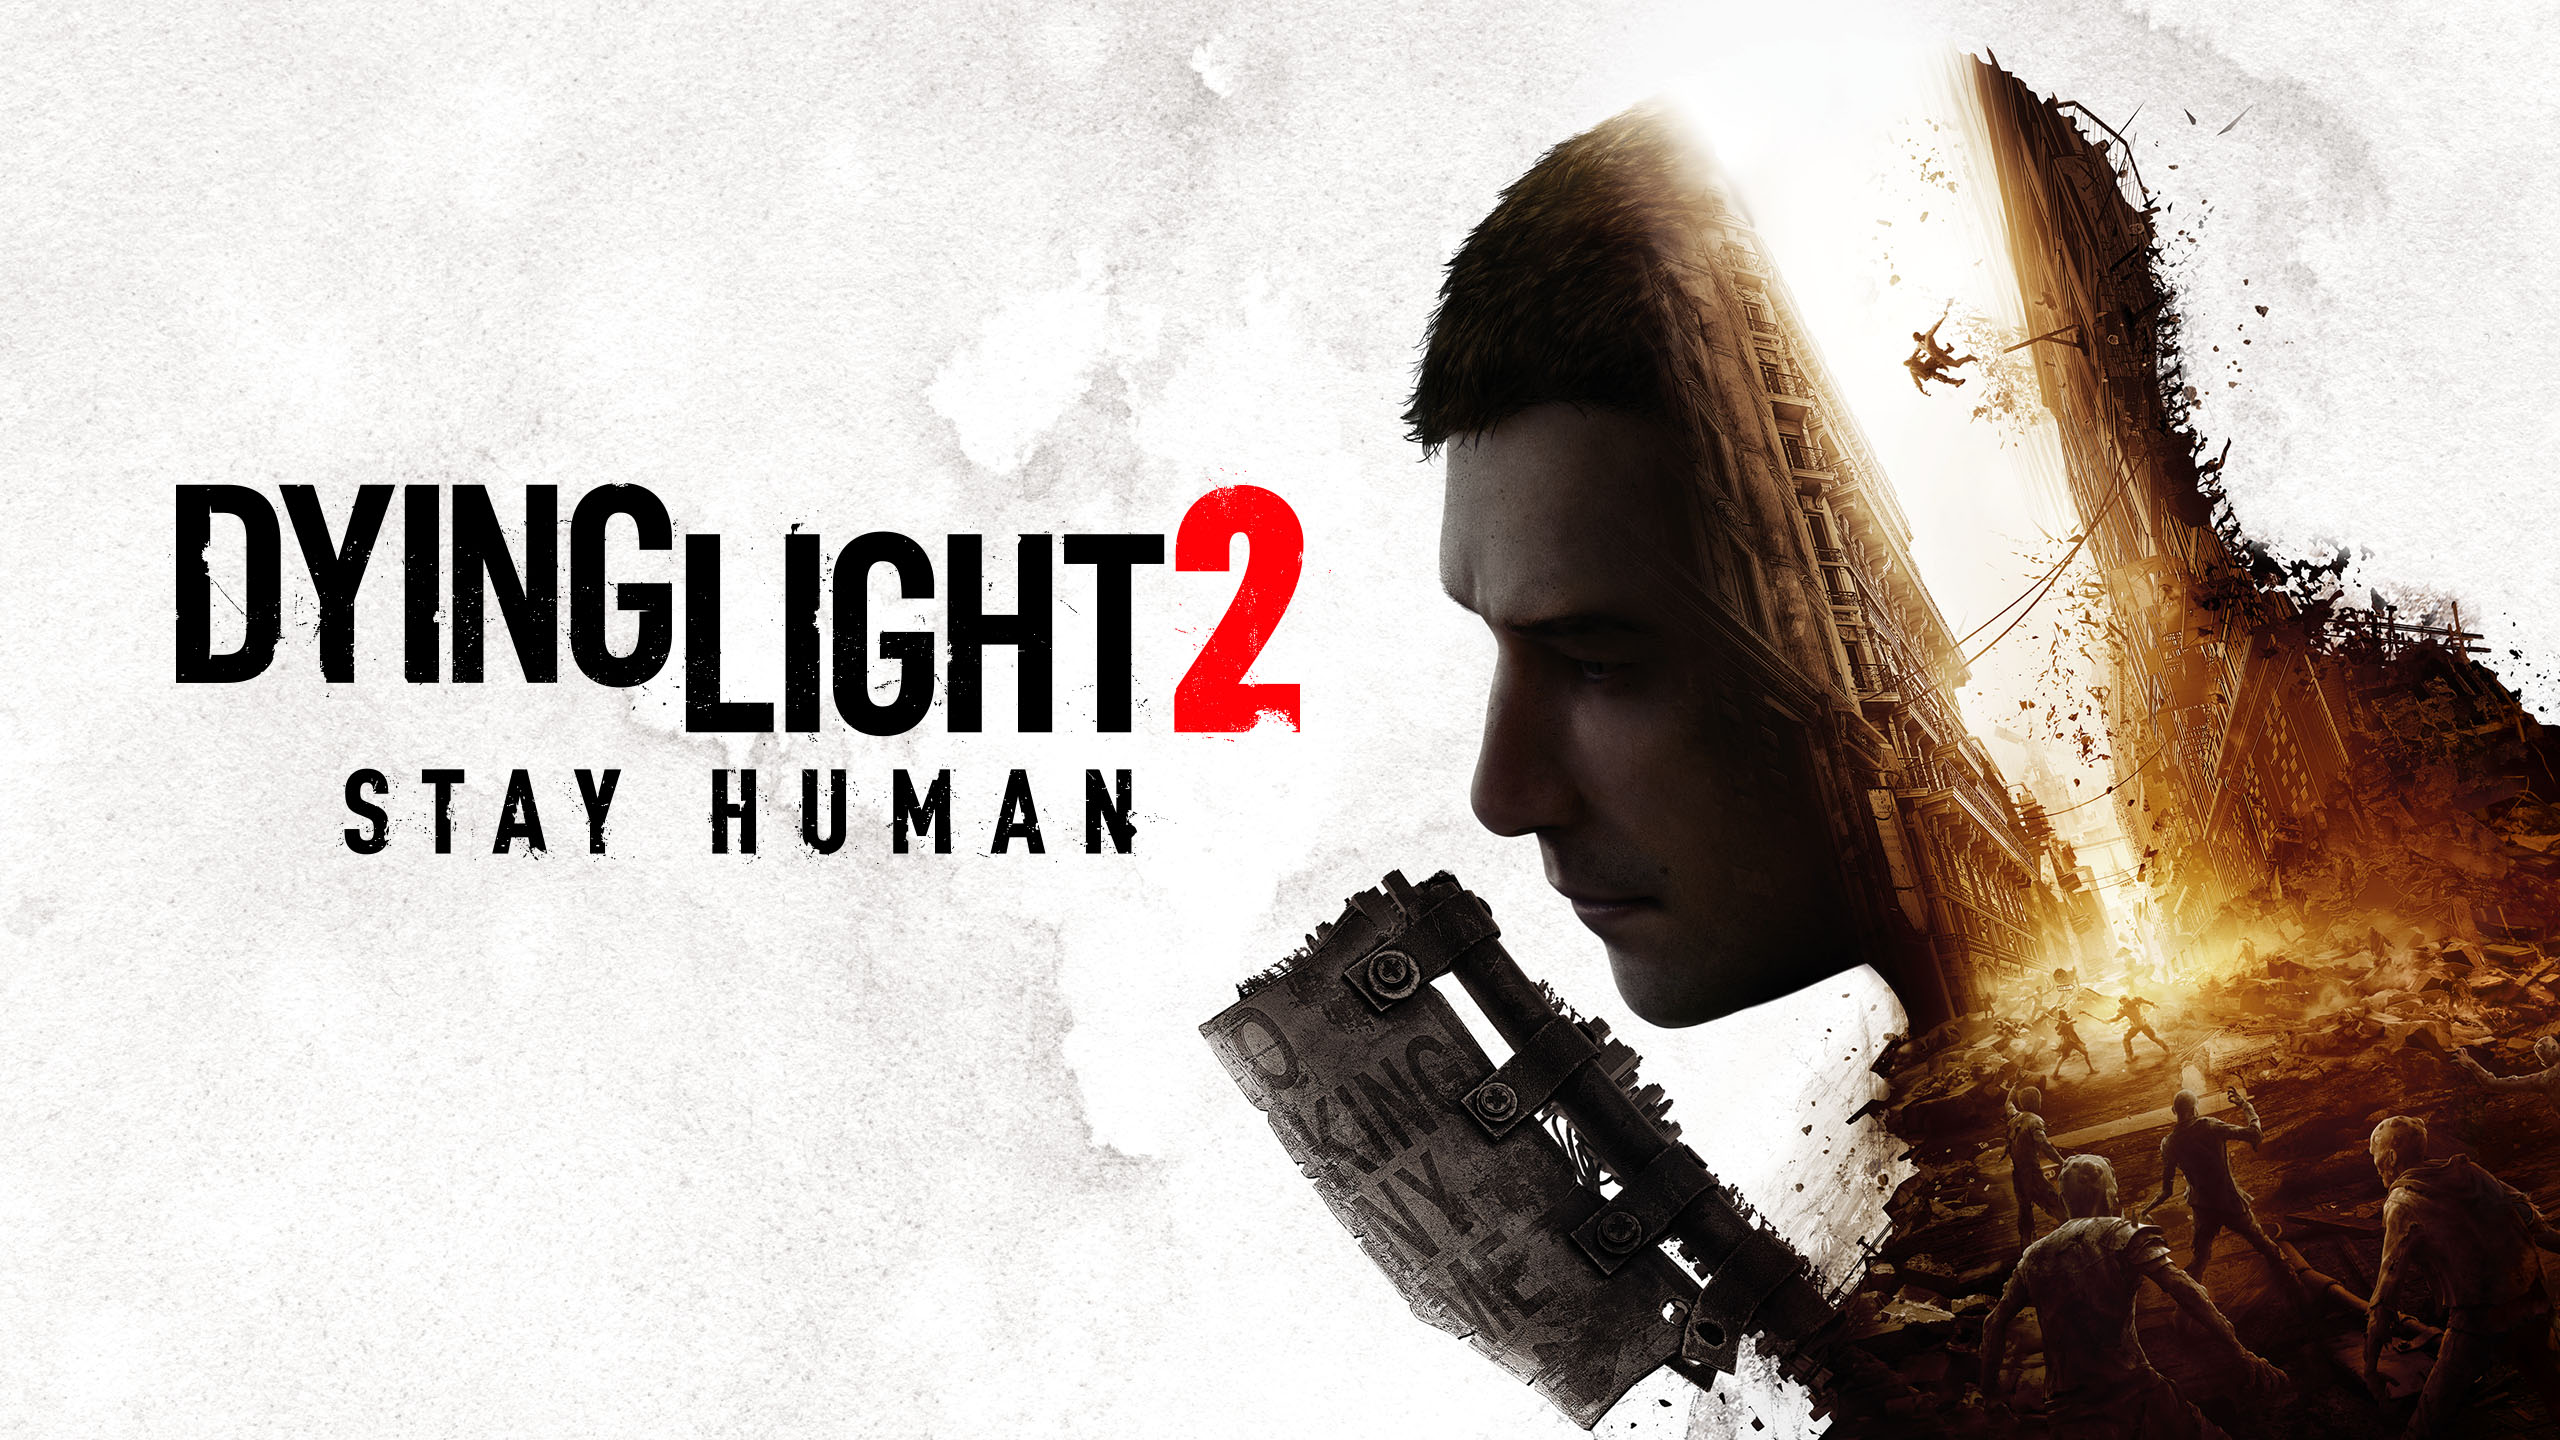 วิดีโอตัวอย่างล่าสุดของ Dying Light 2 Stay Human เผยเกมเพลย์สุดมัน พร้อมกำหนดวางจำหน่ายในวันที่ 7 ธันวาคมนี้